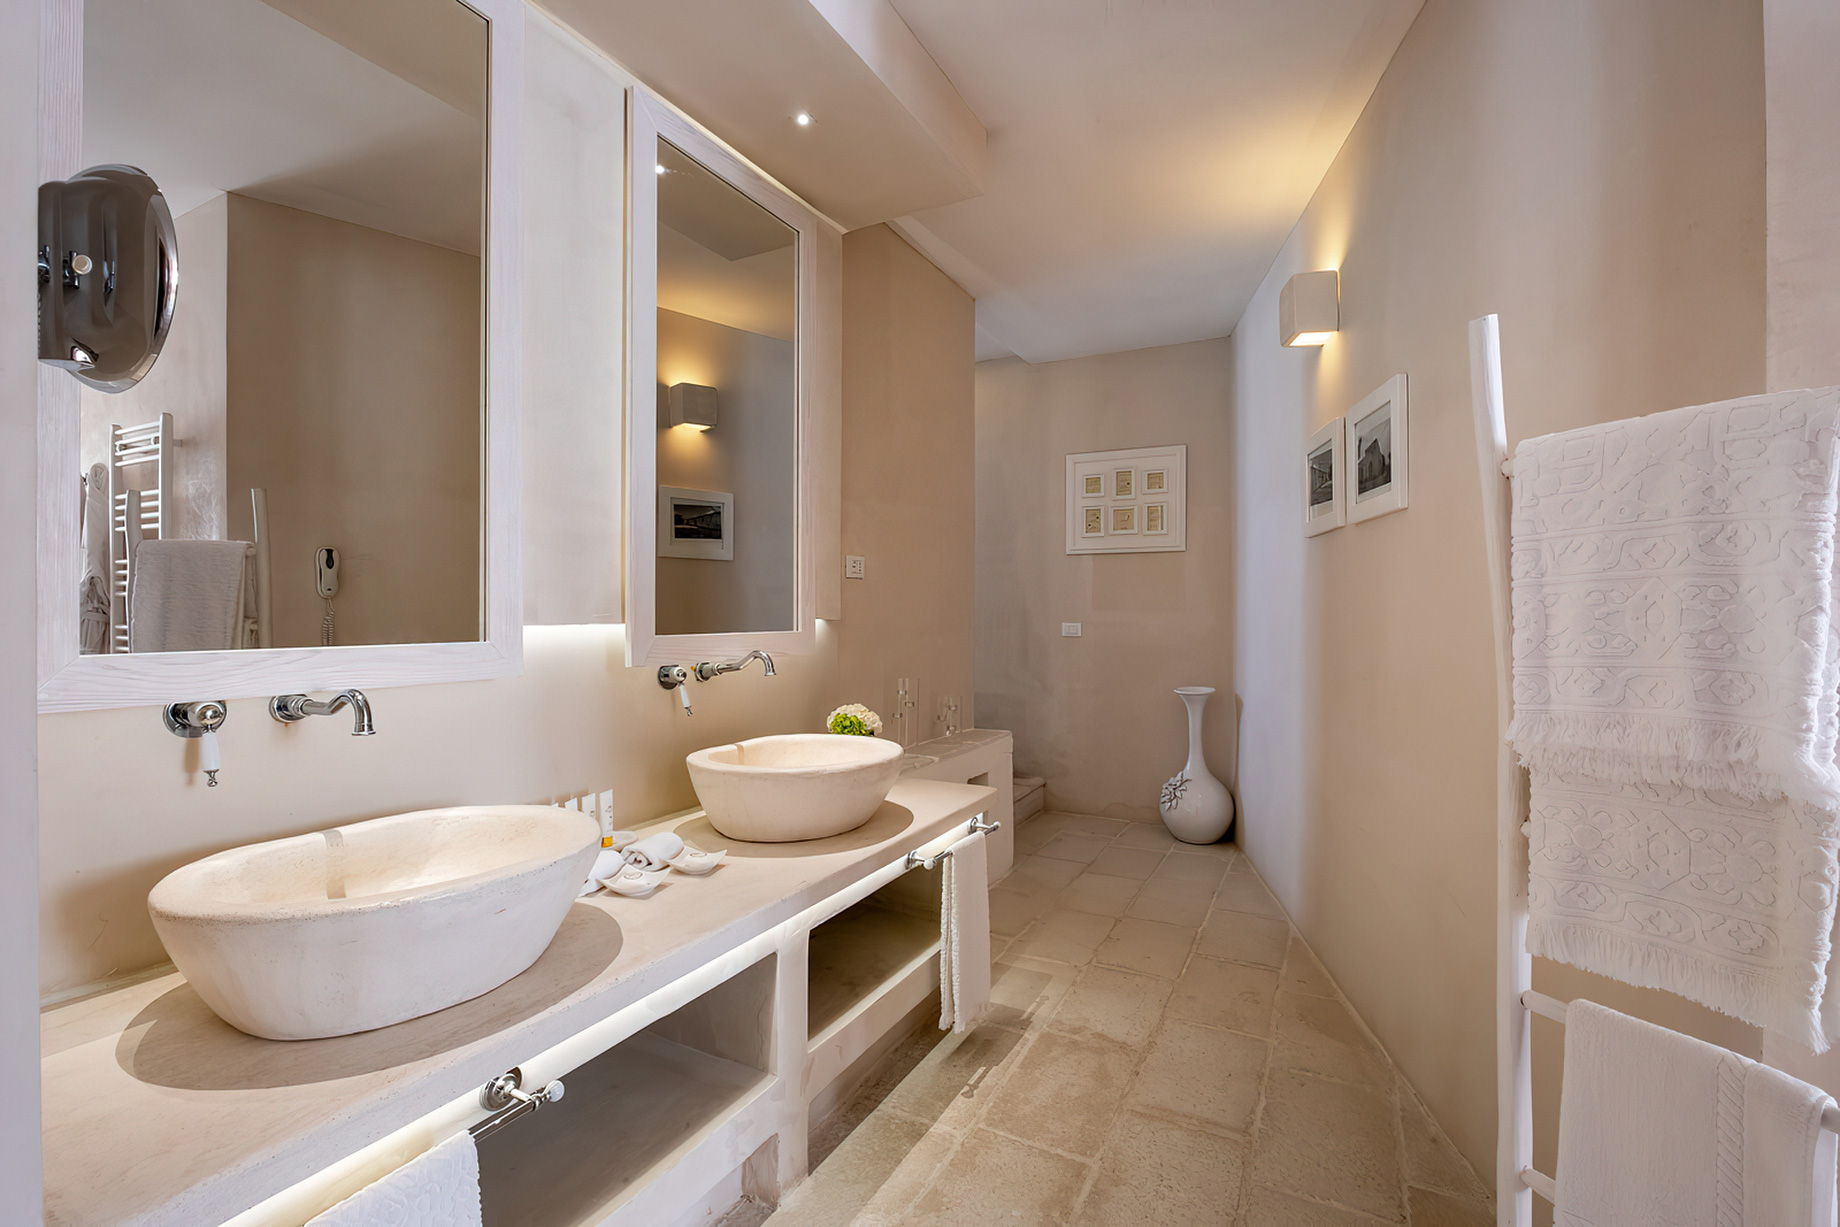 Baglioni Masseria Muzza Hotel – Puglia, Italy – Deluxe Suite Bathroom